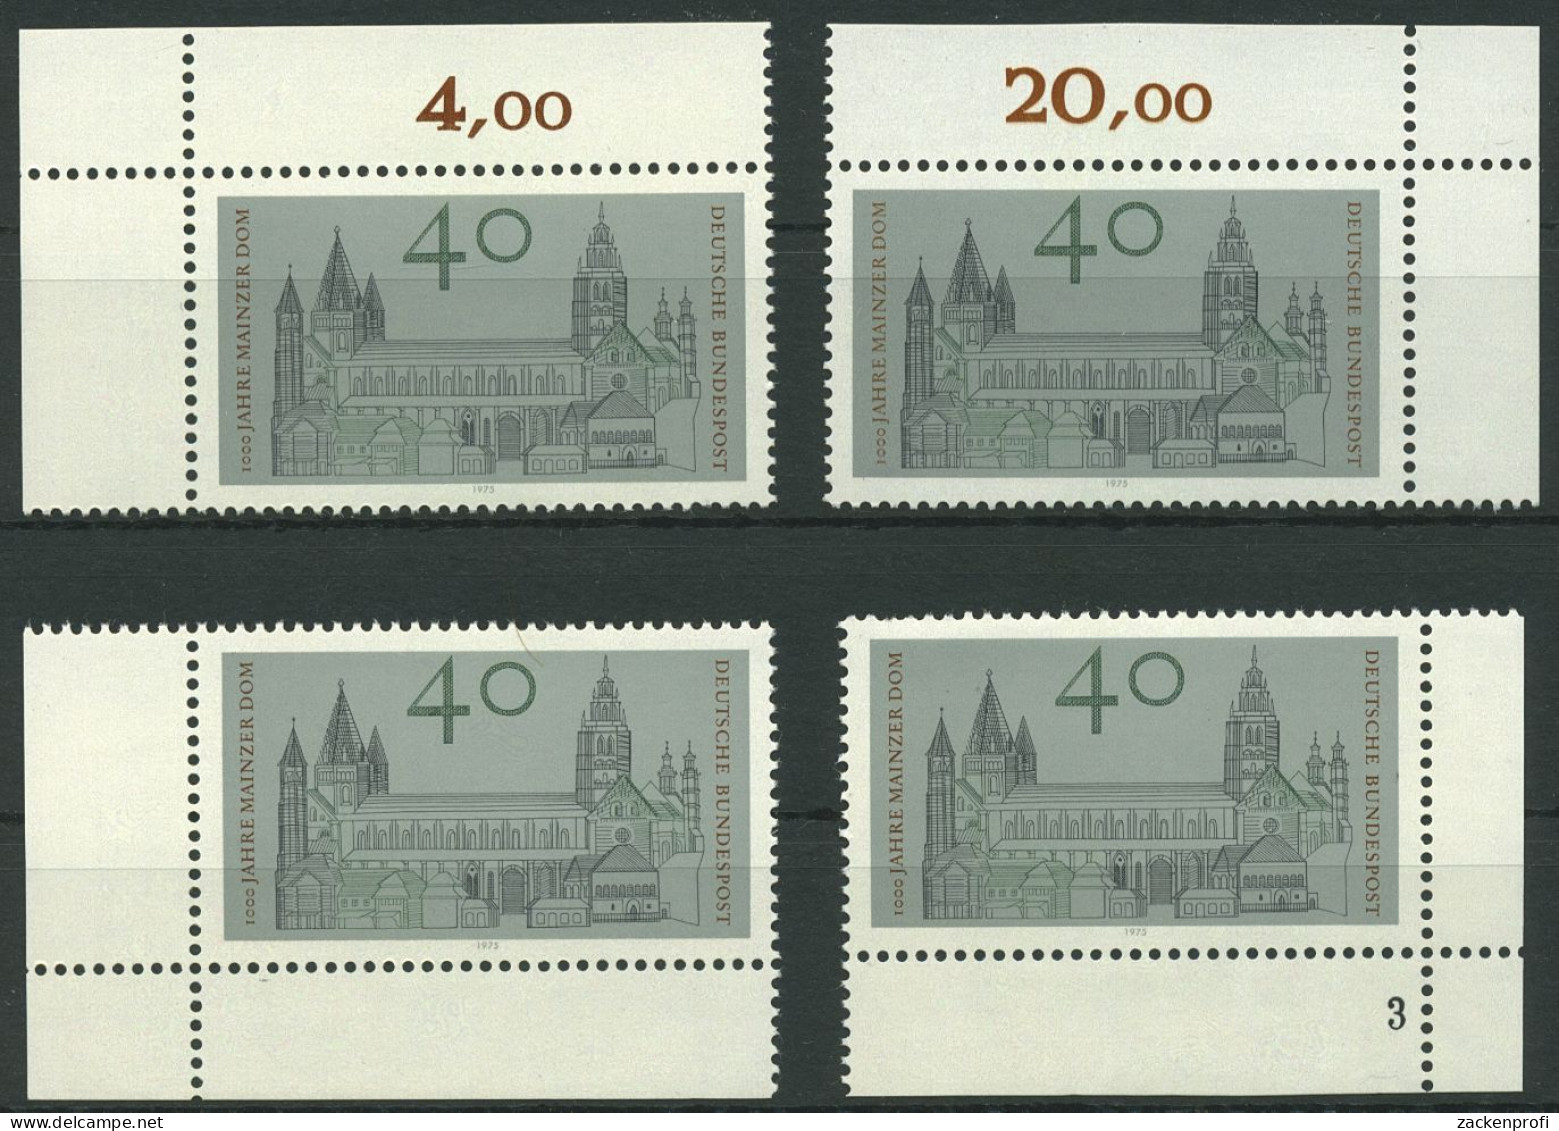 Bund 1975 Mainzer Dom 845 Alle 4 Ecken Postfrisch (E933) - Unused Stamps